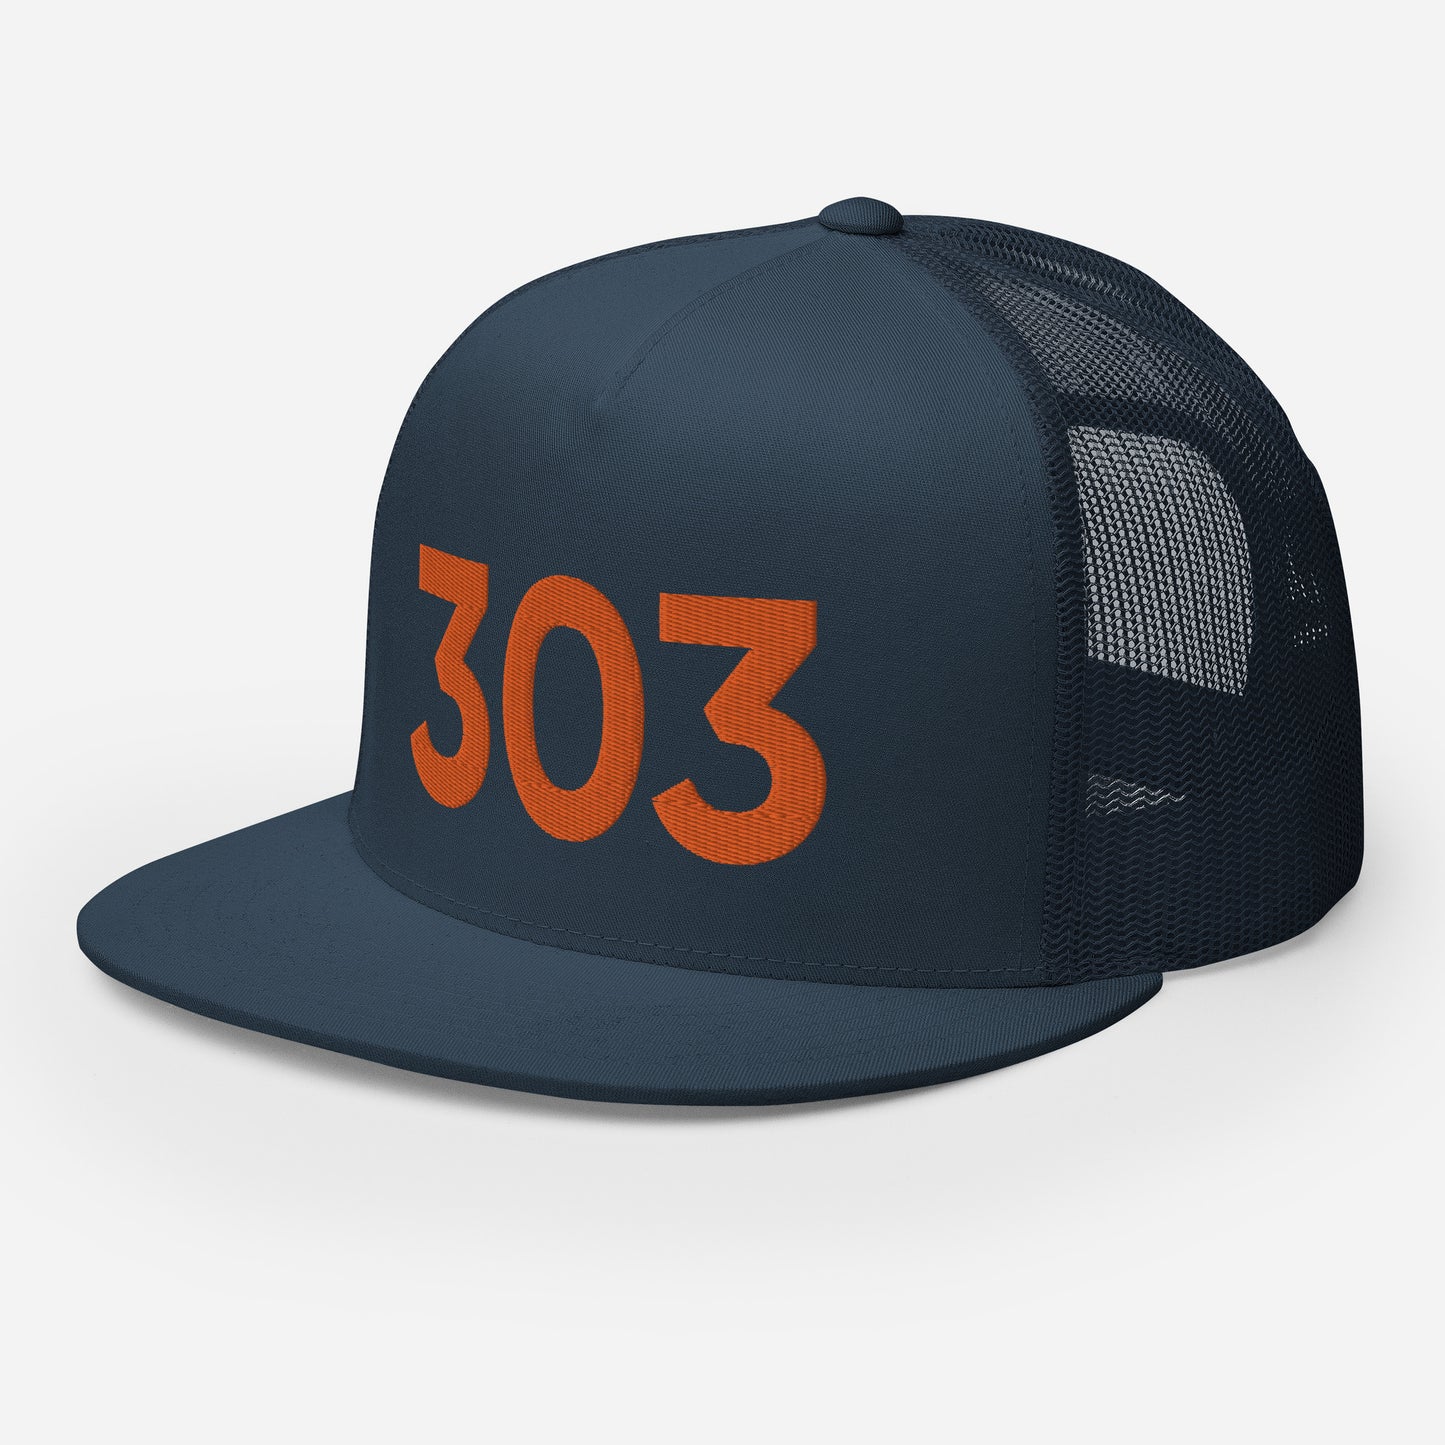 303 Denver Strong Trucker Hat